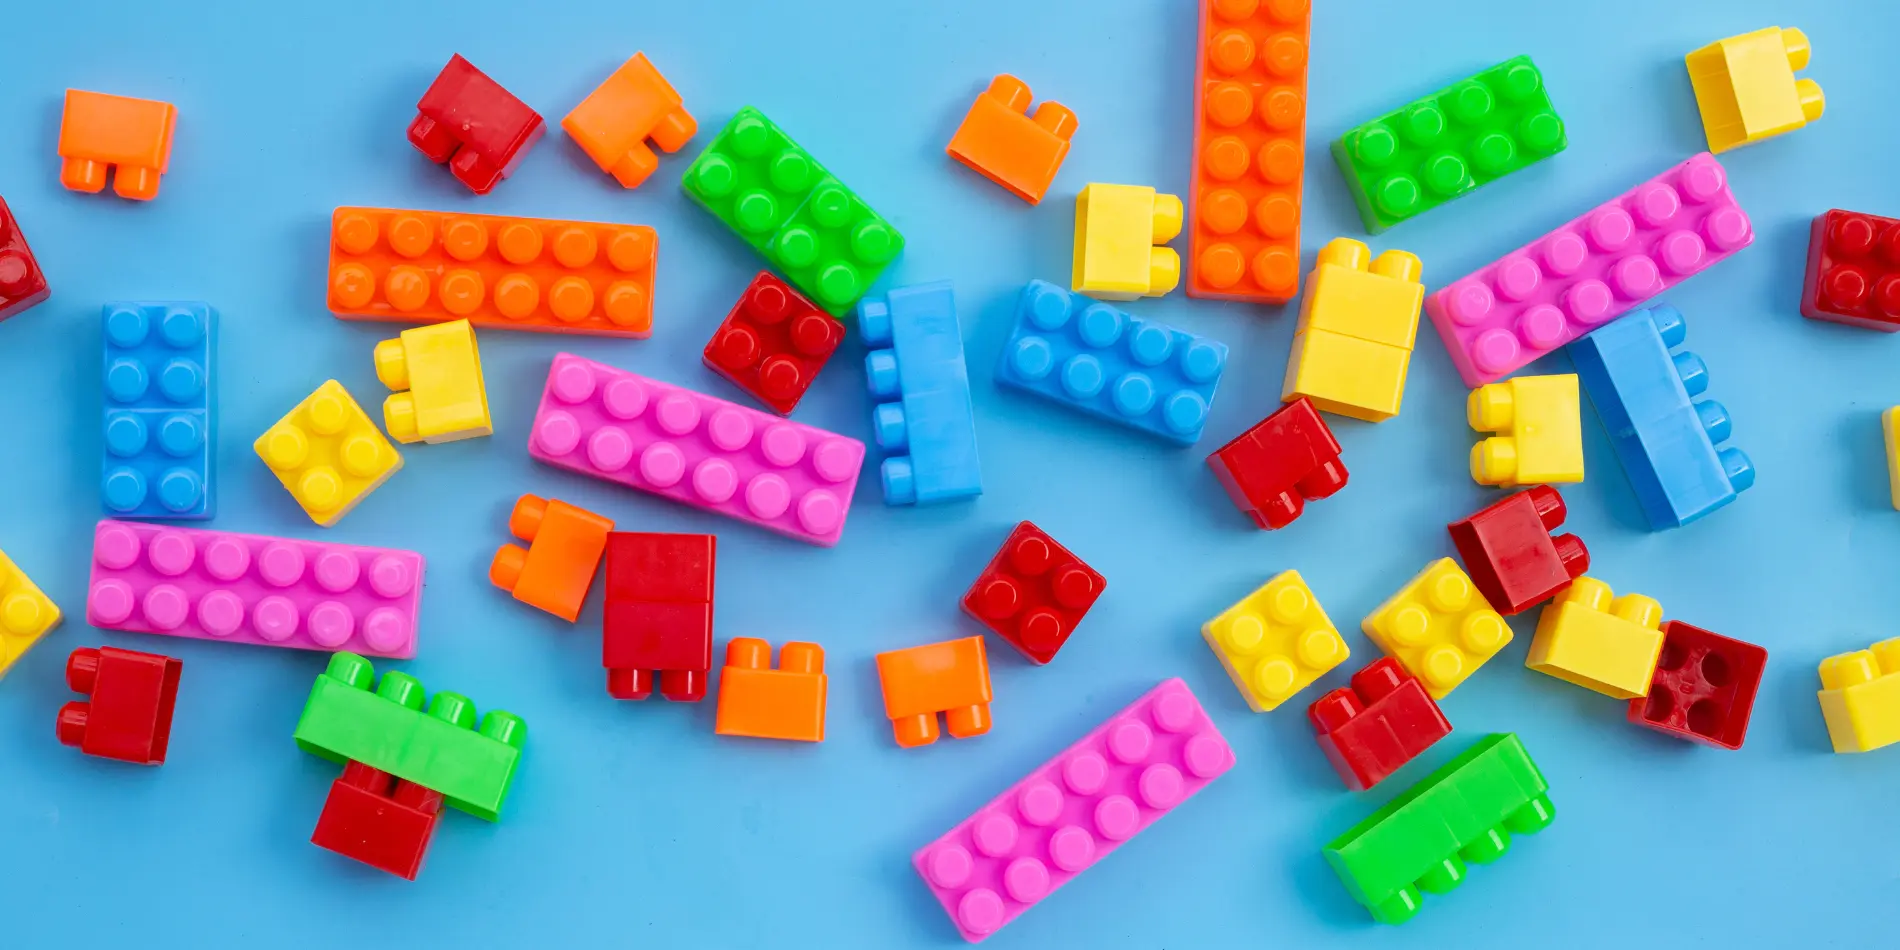 Many multicoloured LEGO-style bricks scattered around.